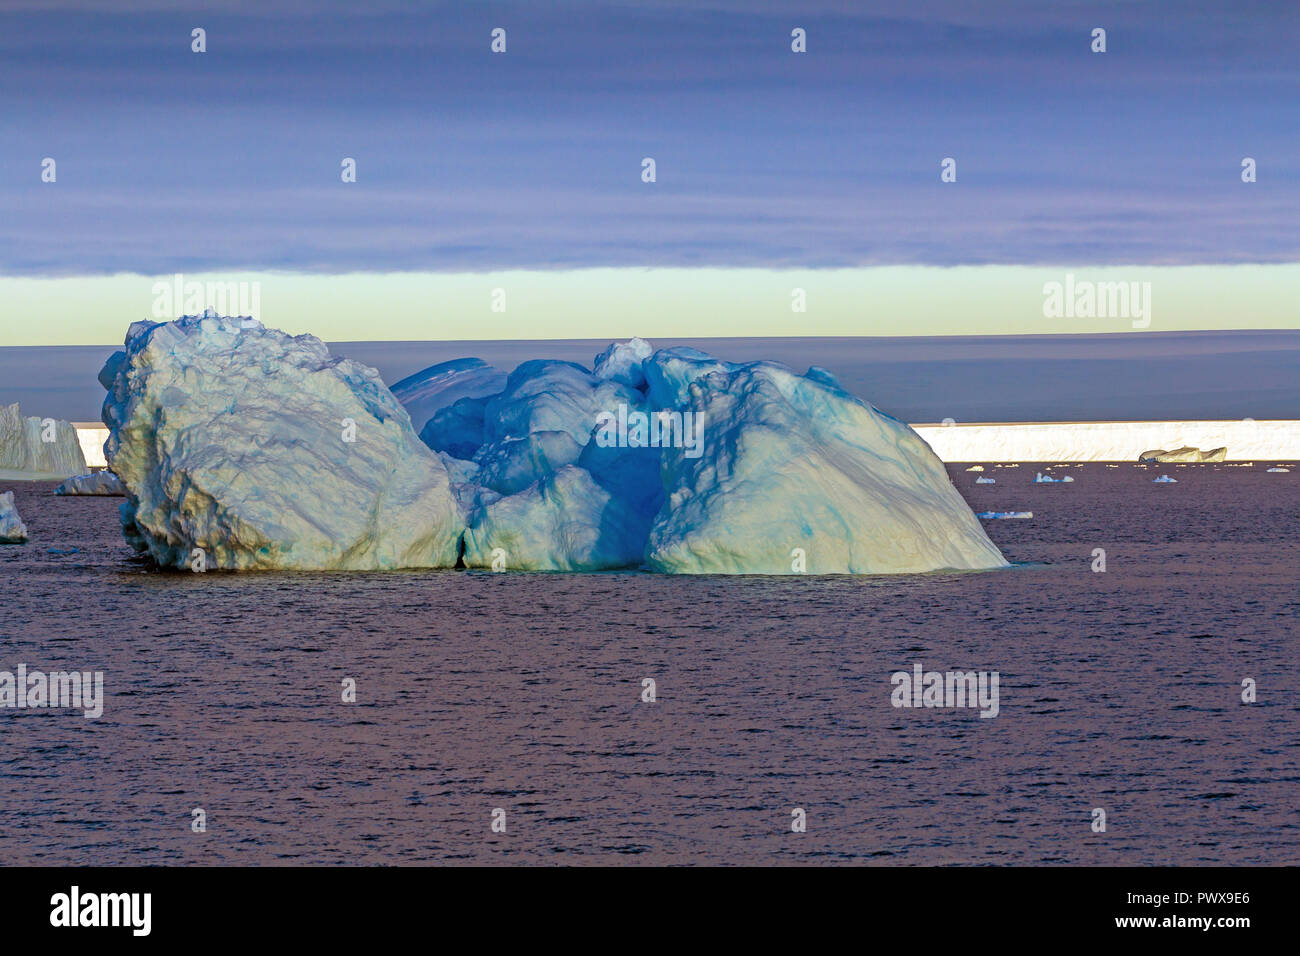 Eisberg schwimmt auf dem offenen Wasser. Sehen sie die Unterwasserwelt und die Eisschollen in der Nähe von Es. Antarktis. Stockfoto